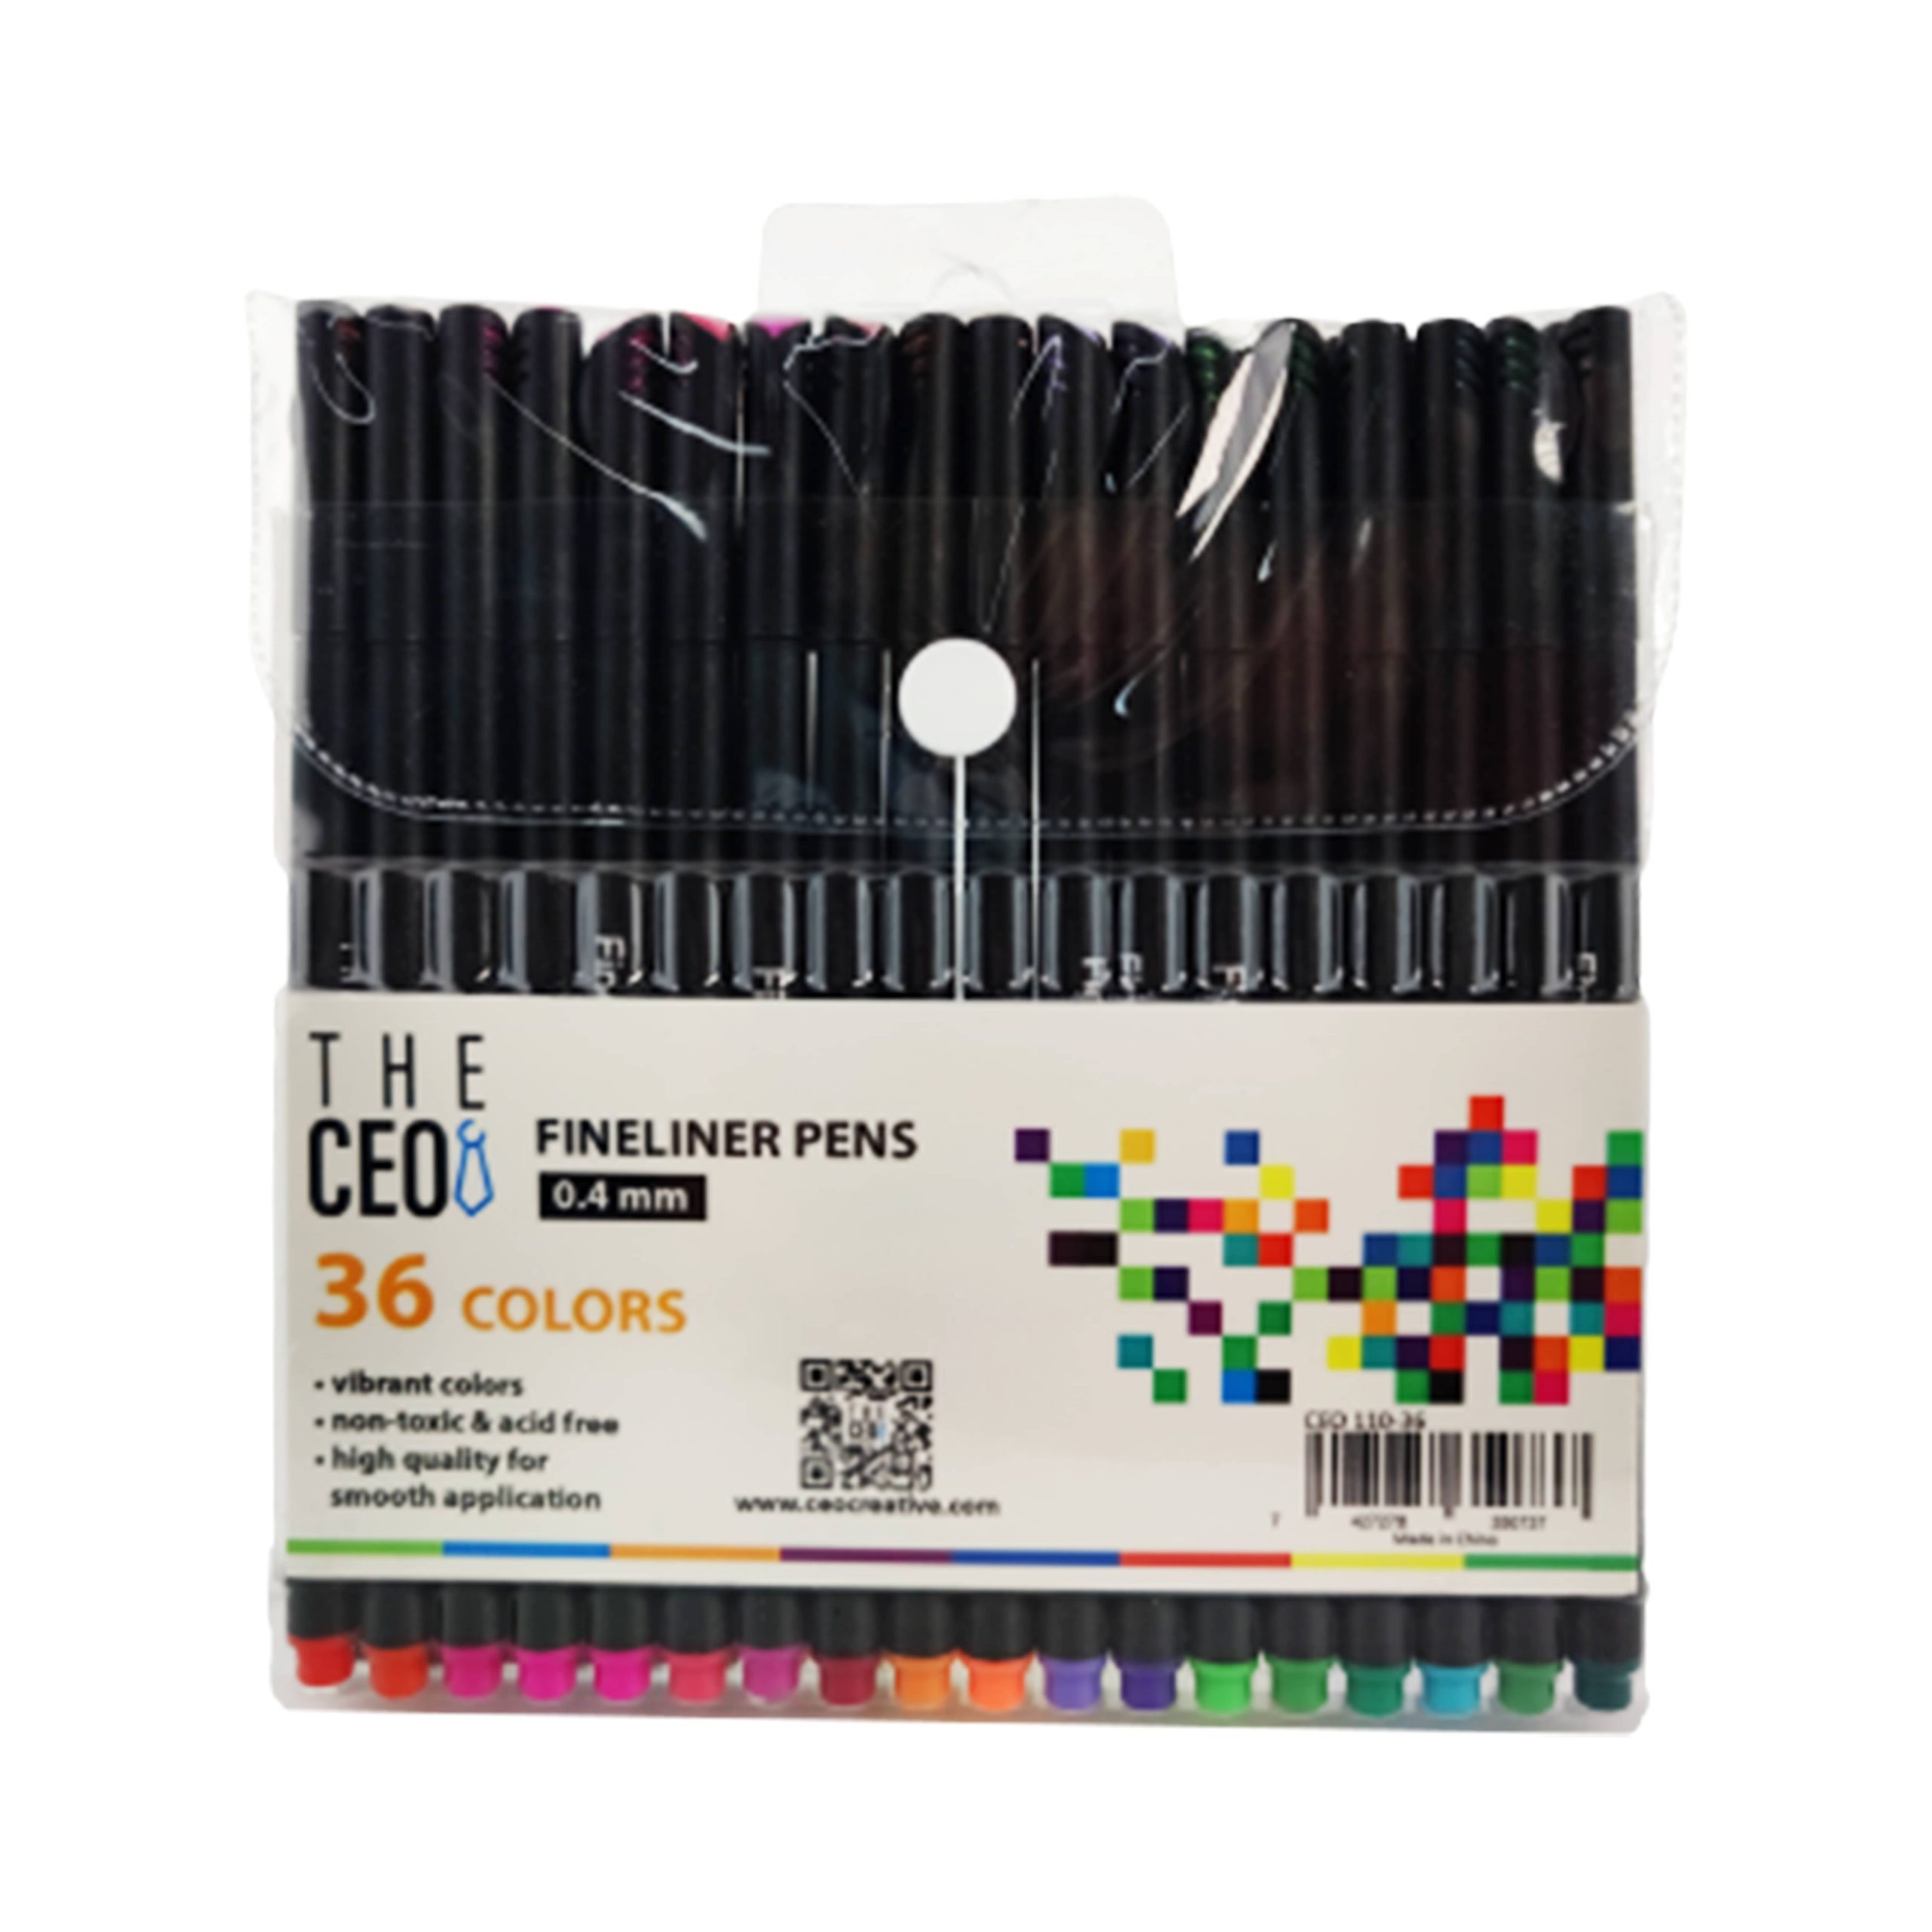 Pack of 1 Fineliner Pens 0.4mm Fine Tip Marker Drawing Color Pens